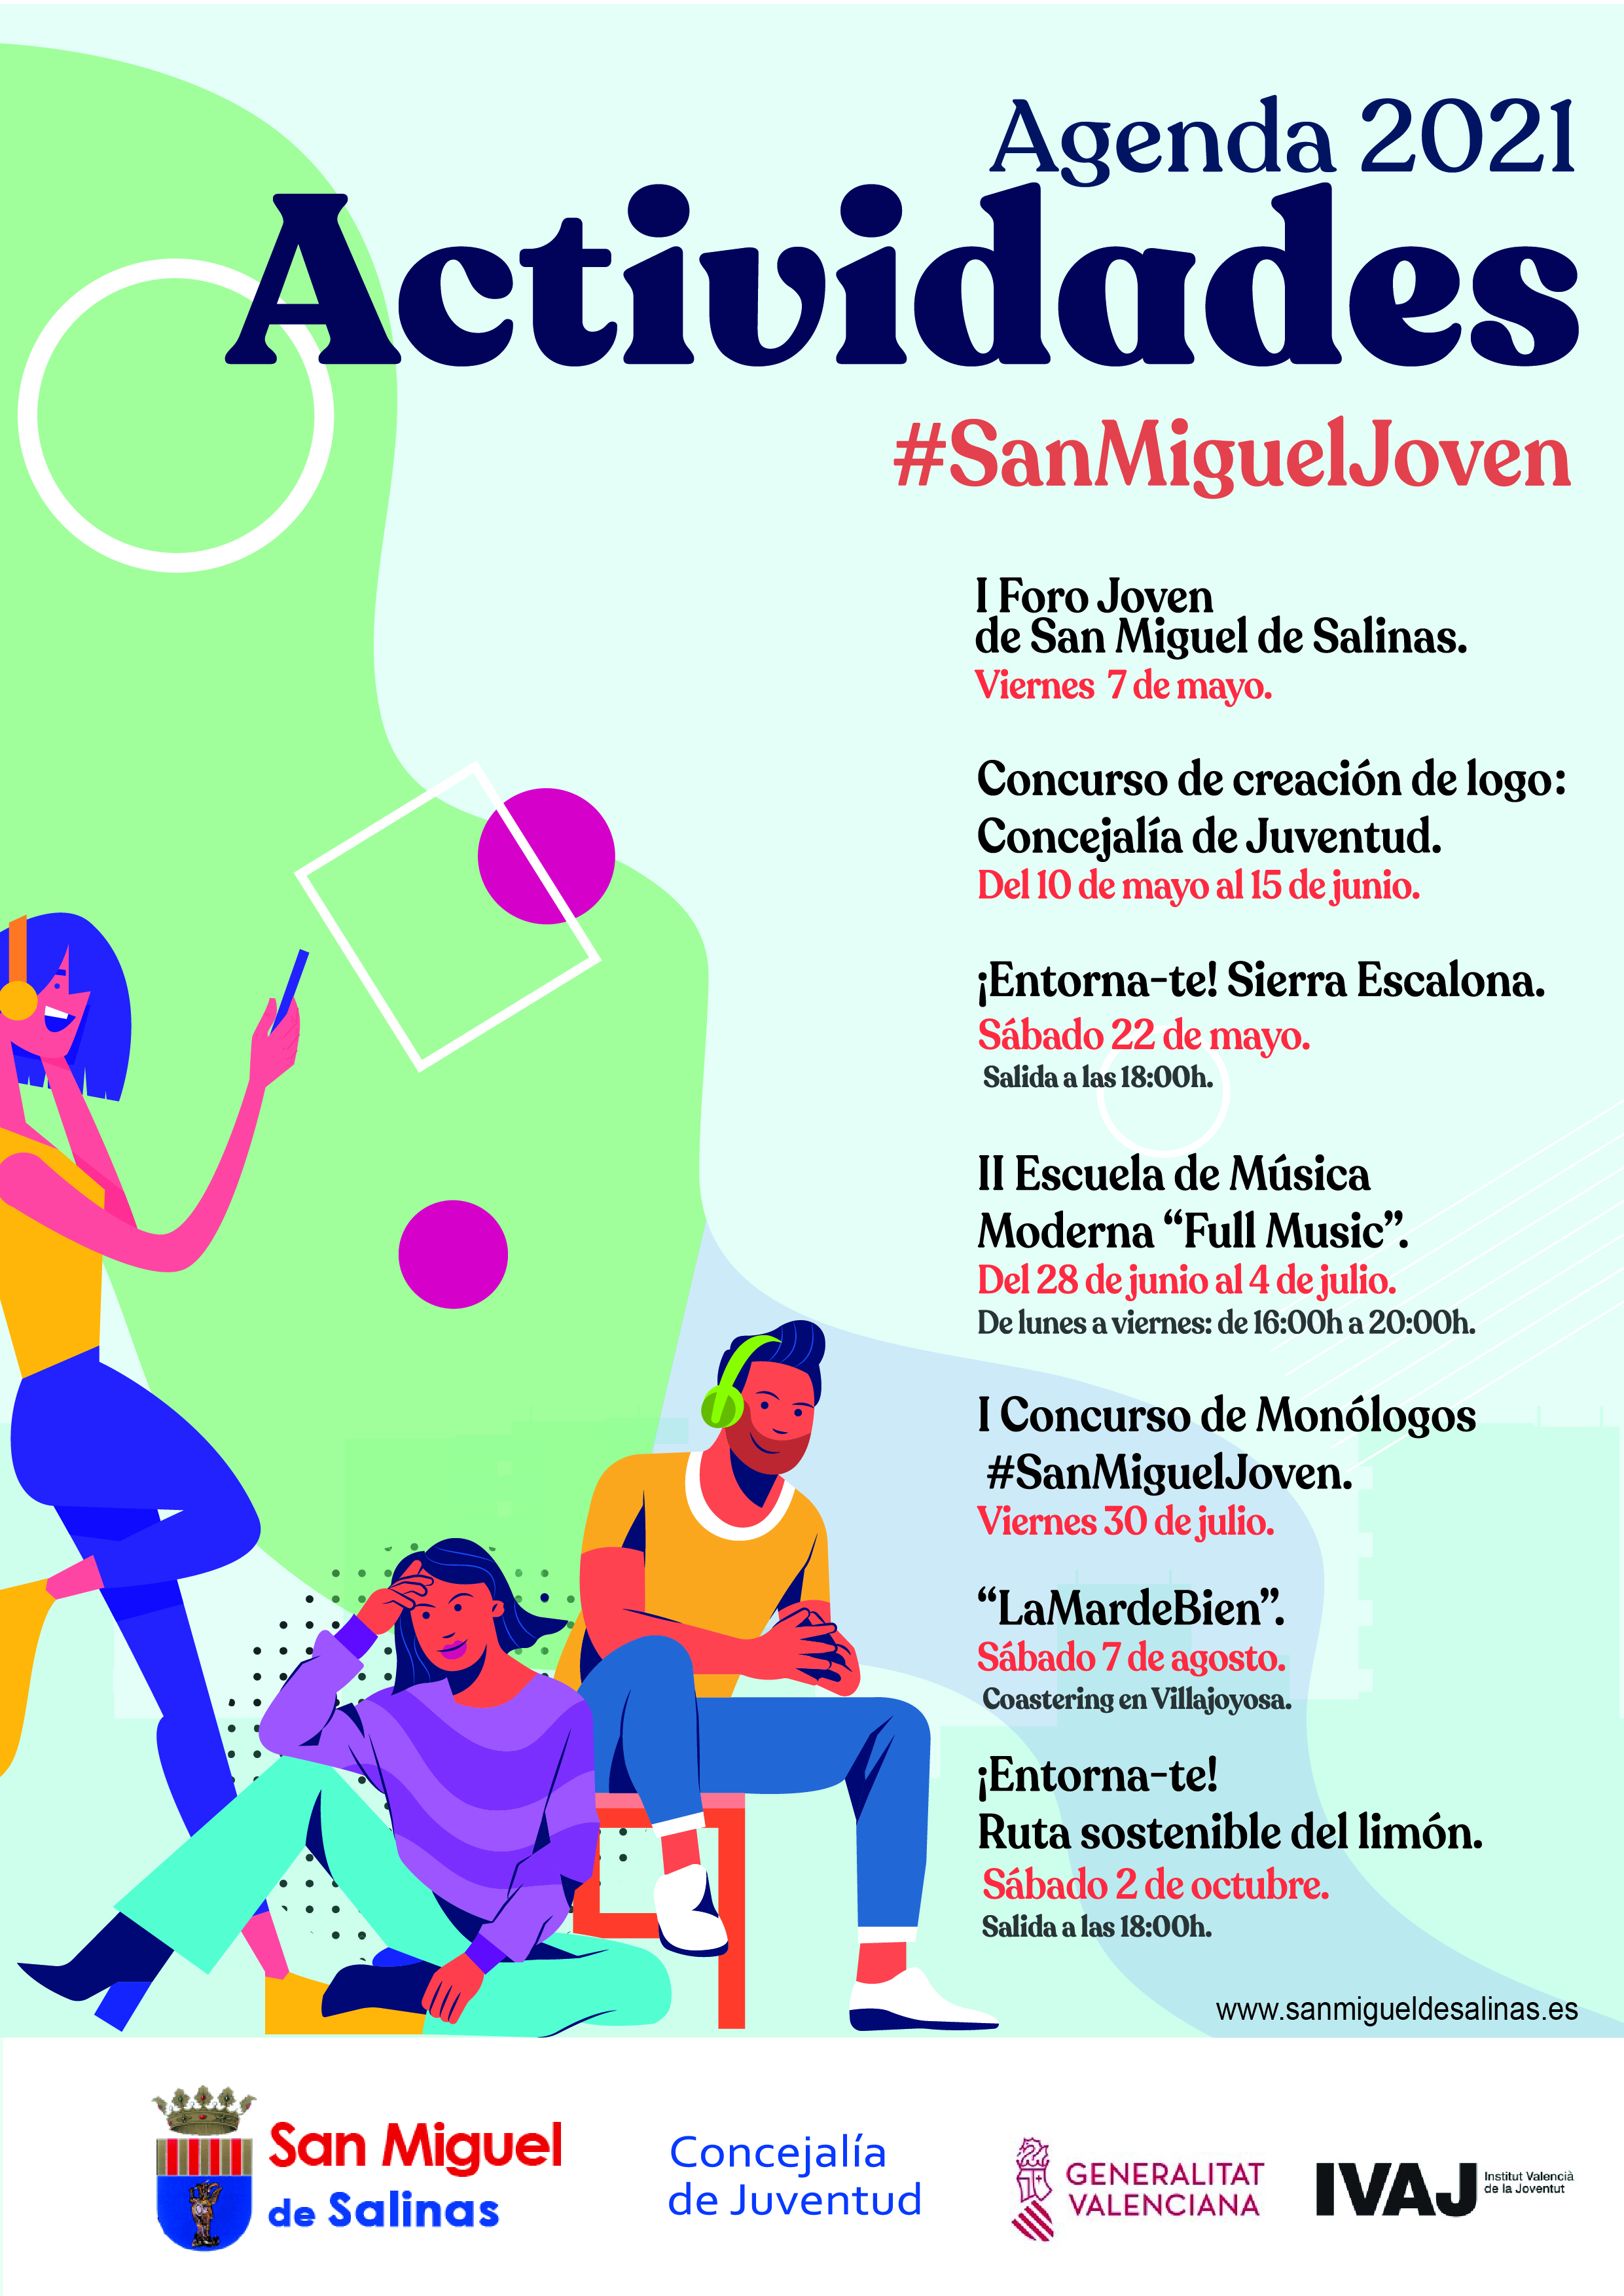 AGENDA 2021. PROGRAMACIÓ  #SANMIGUELJOVEN. San Miguel de Salinas